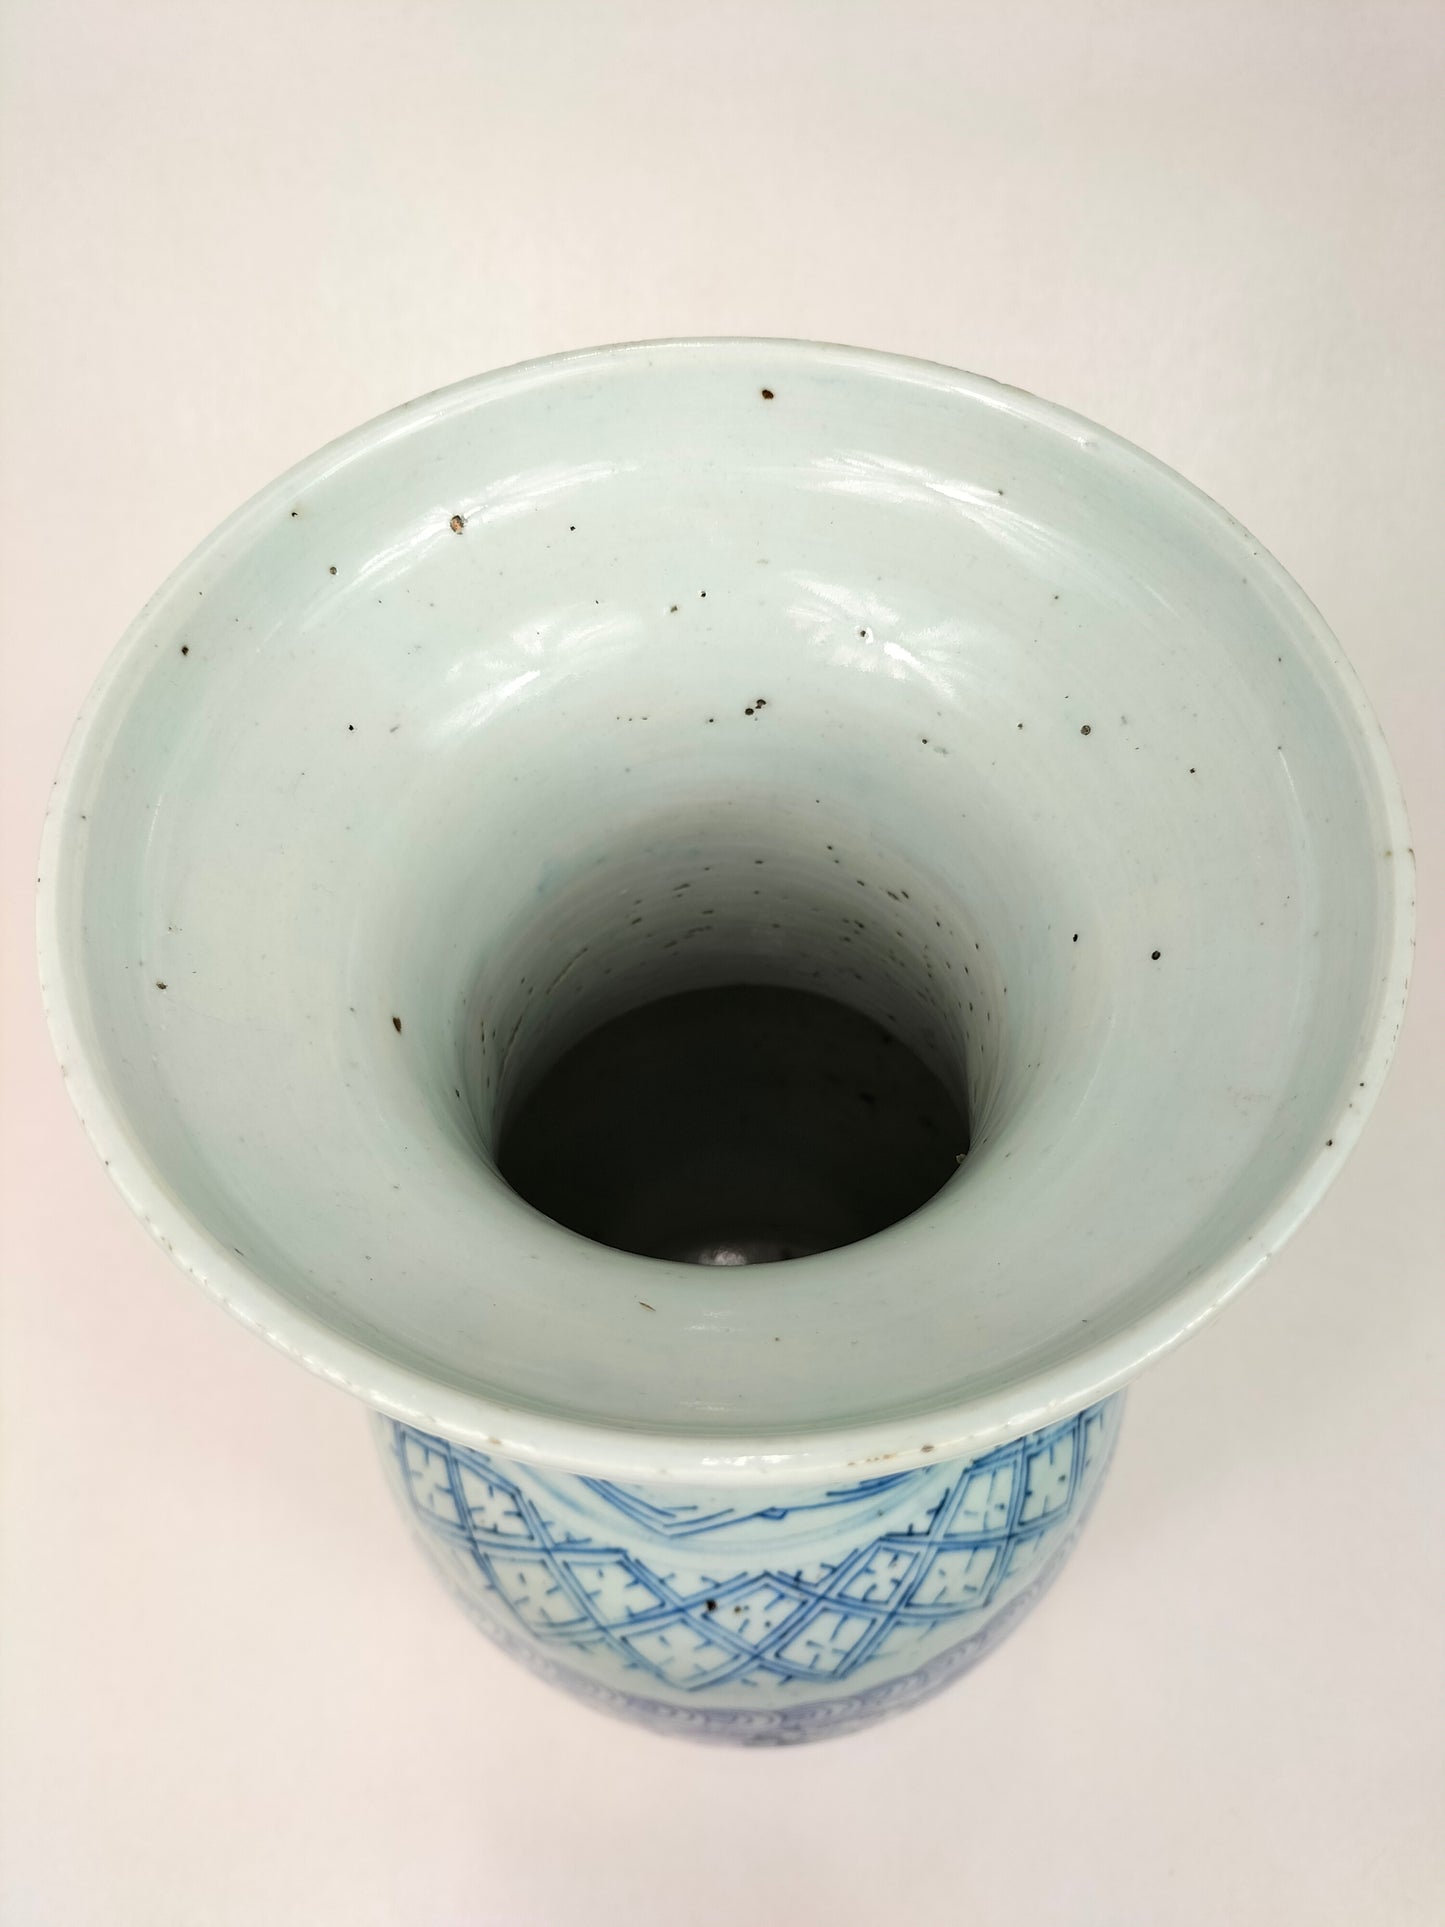 Antigo vaso chinês duplo de felicidade // Azul e branco - Dinastia Qing - século XIX